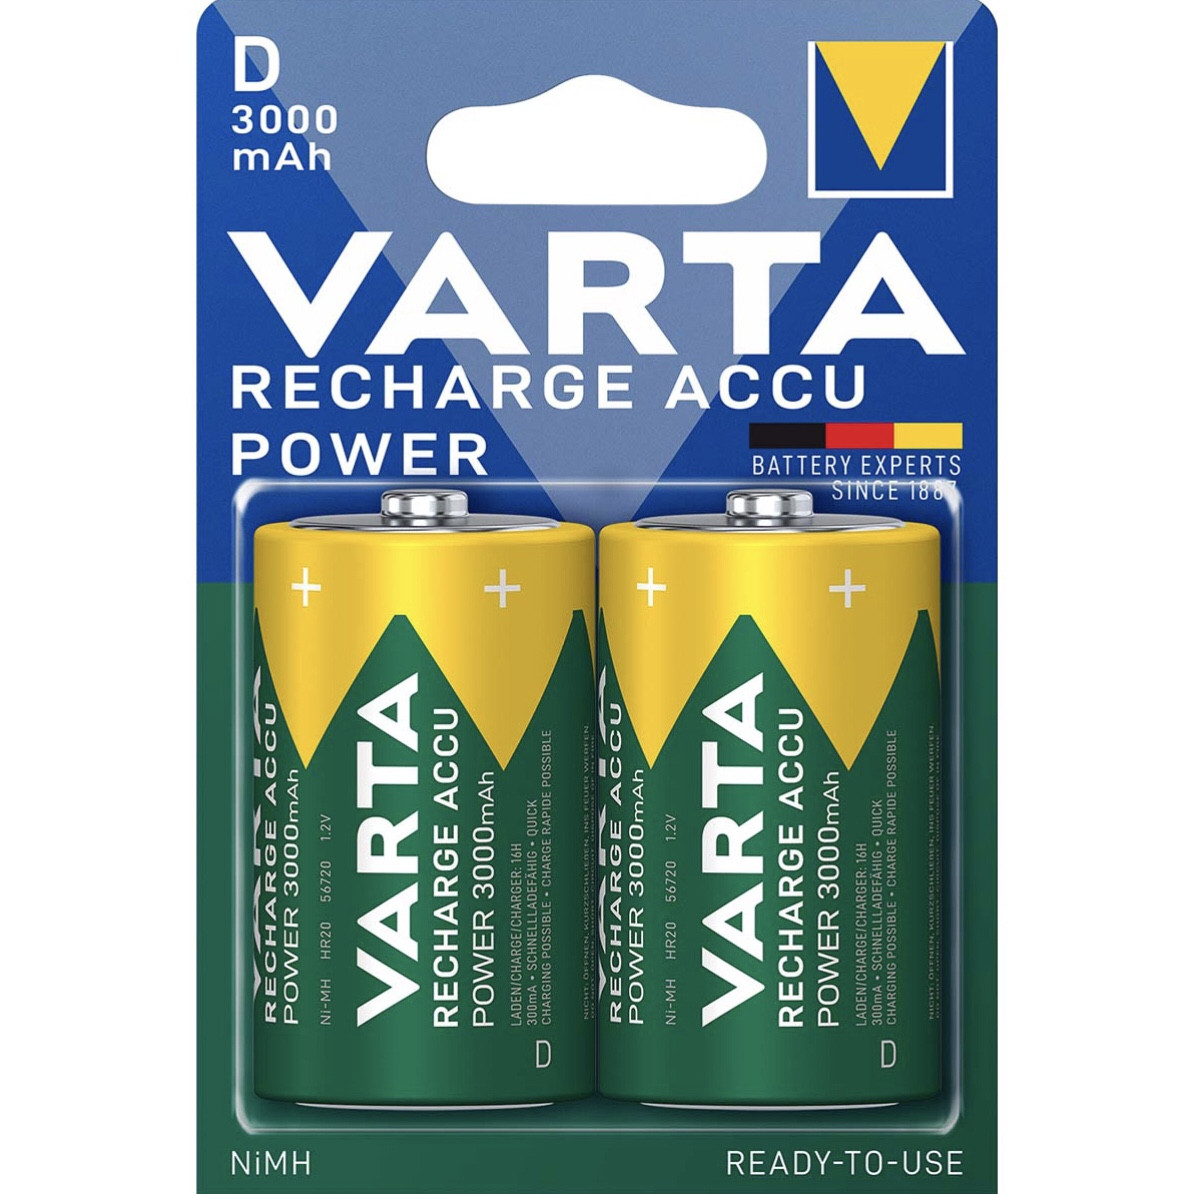 Аккумуляторы Varta Recharge Accu Power NiMH D/HR20 3000 mAh 1.2V, 2шт